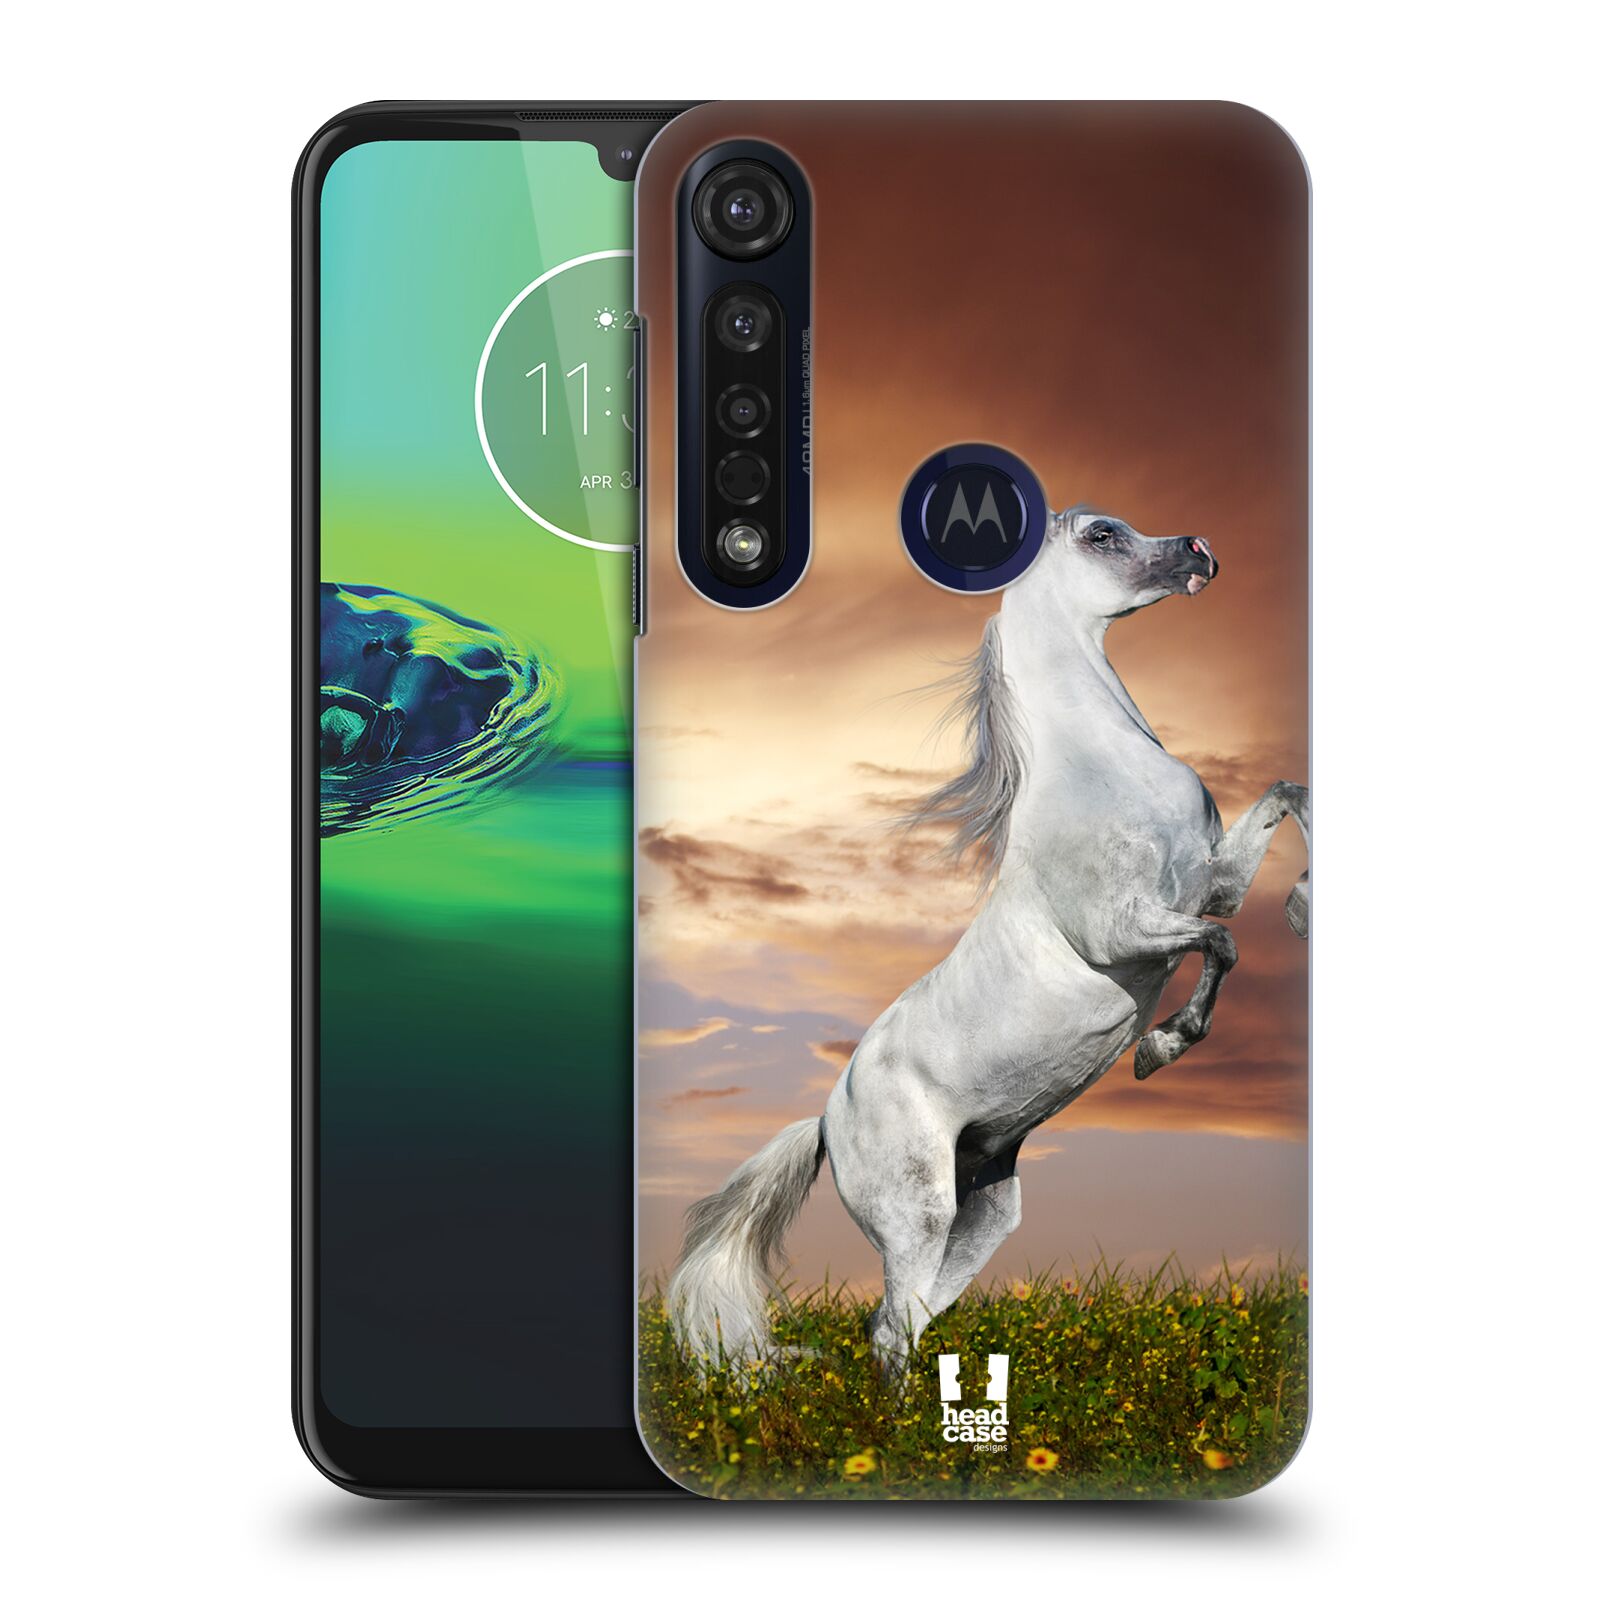 Pouzdro na mobil Motorola Moto G8 PLUS - HEAD CASE - vzor Divočina, Divoký život a zvířata foto DIVOKÝ KŮŇ MUSTANG BÍLÁ